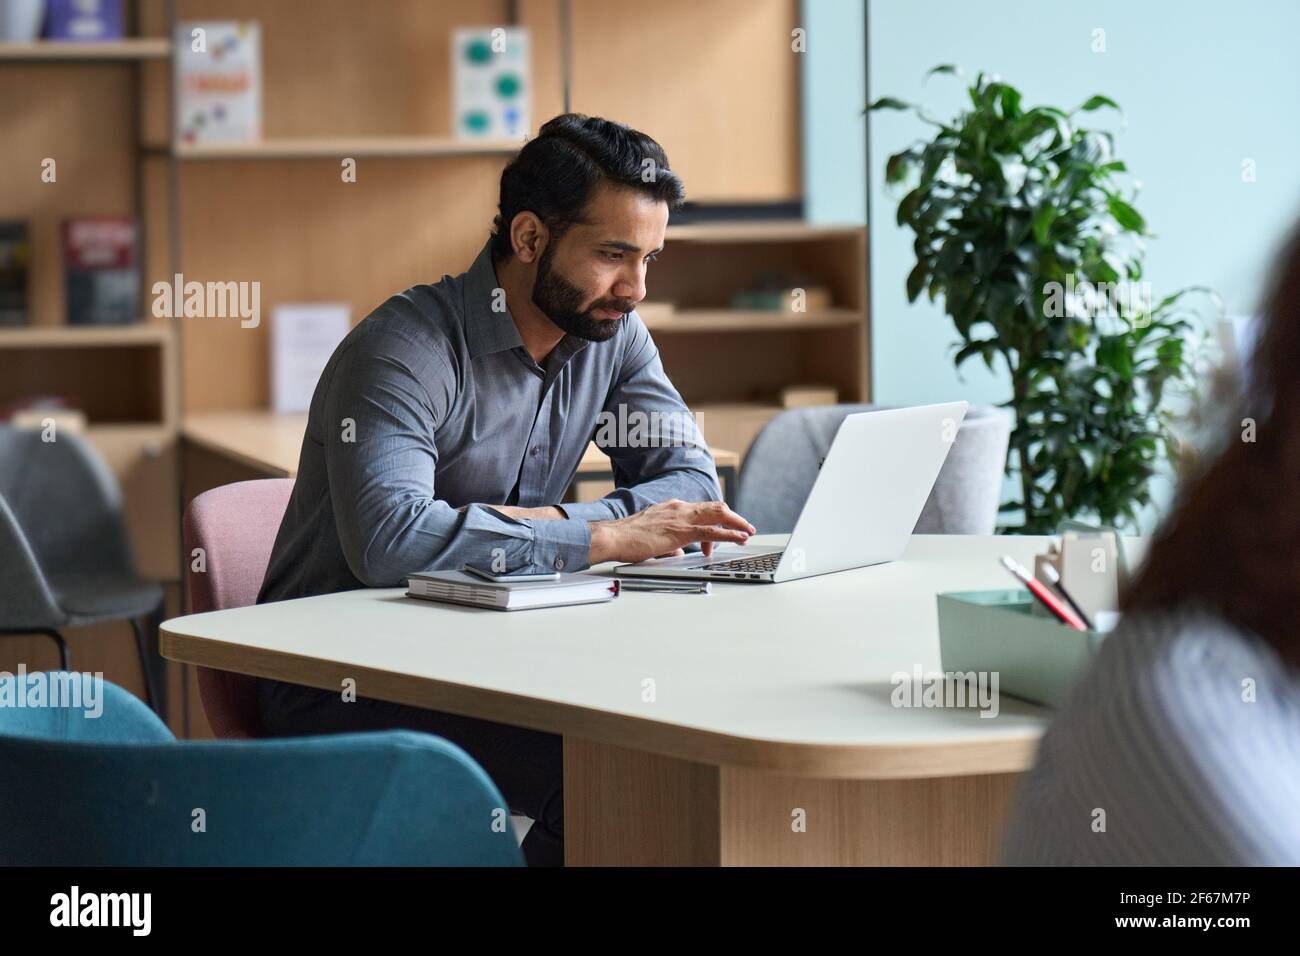 Homme d'affaires indien étudiant travaillant ou étudiant sur un ordinateur portable. Banque D'Images